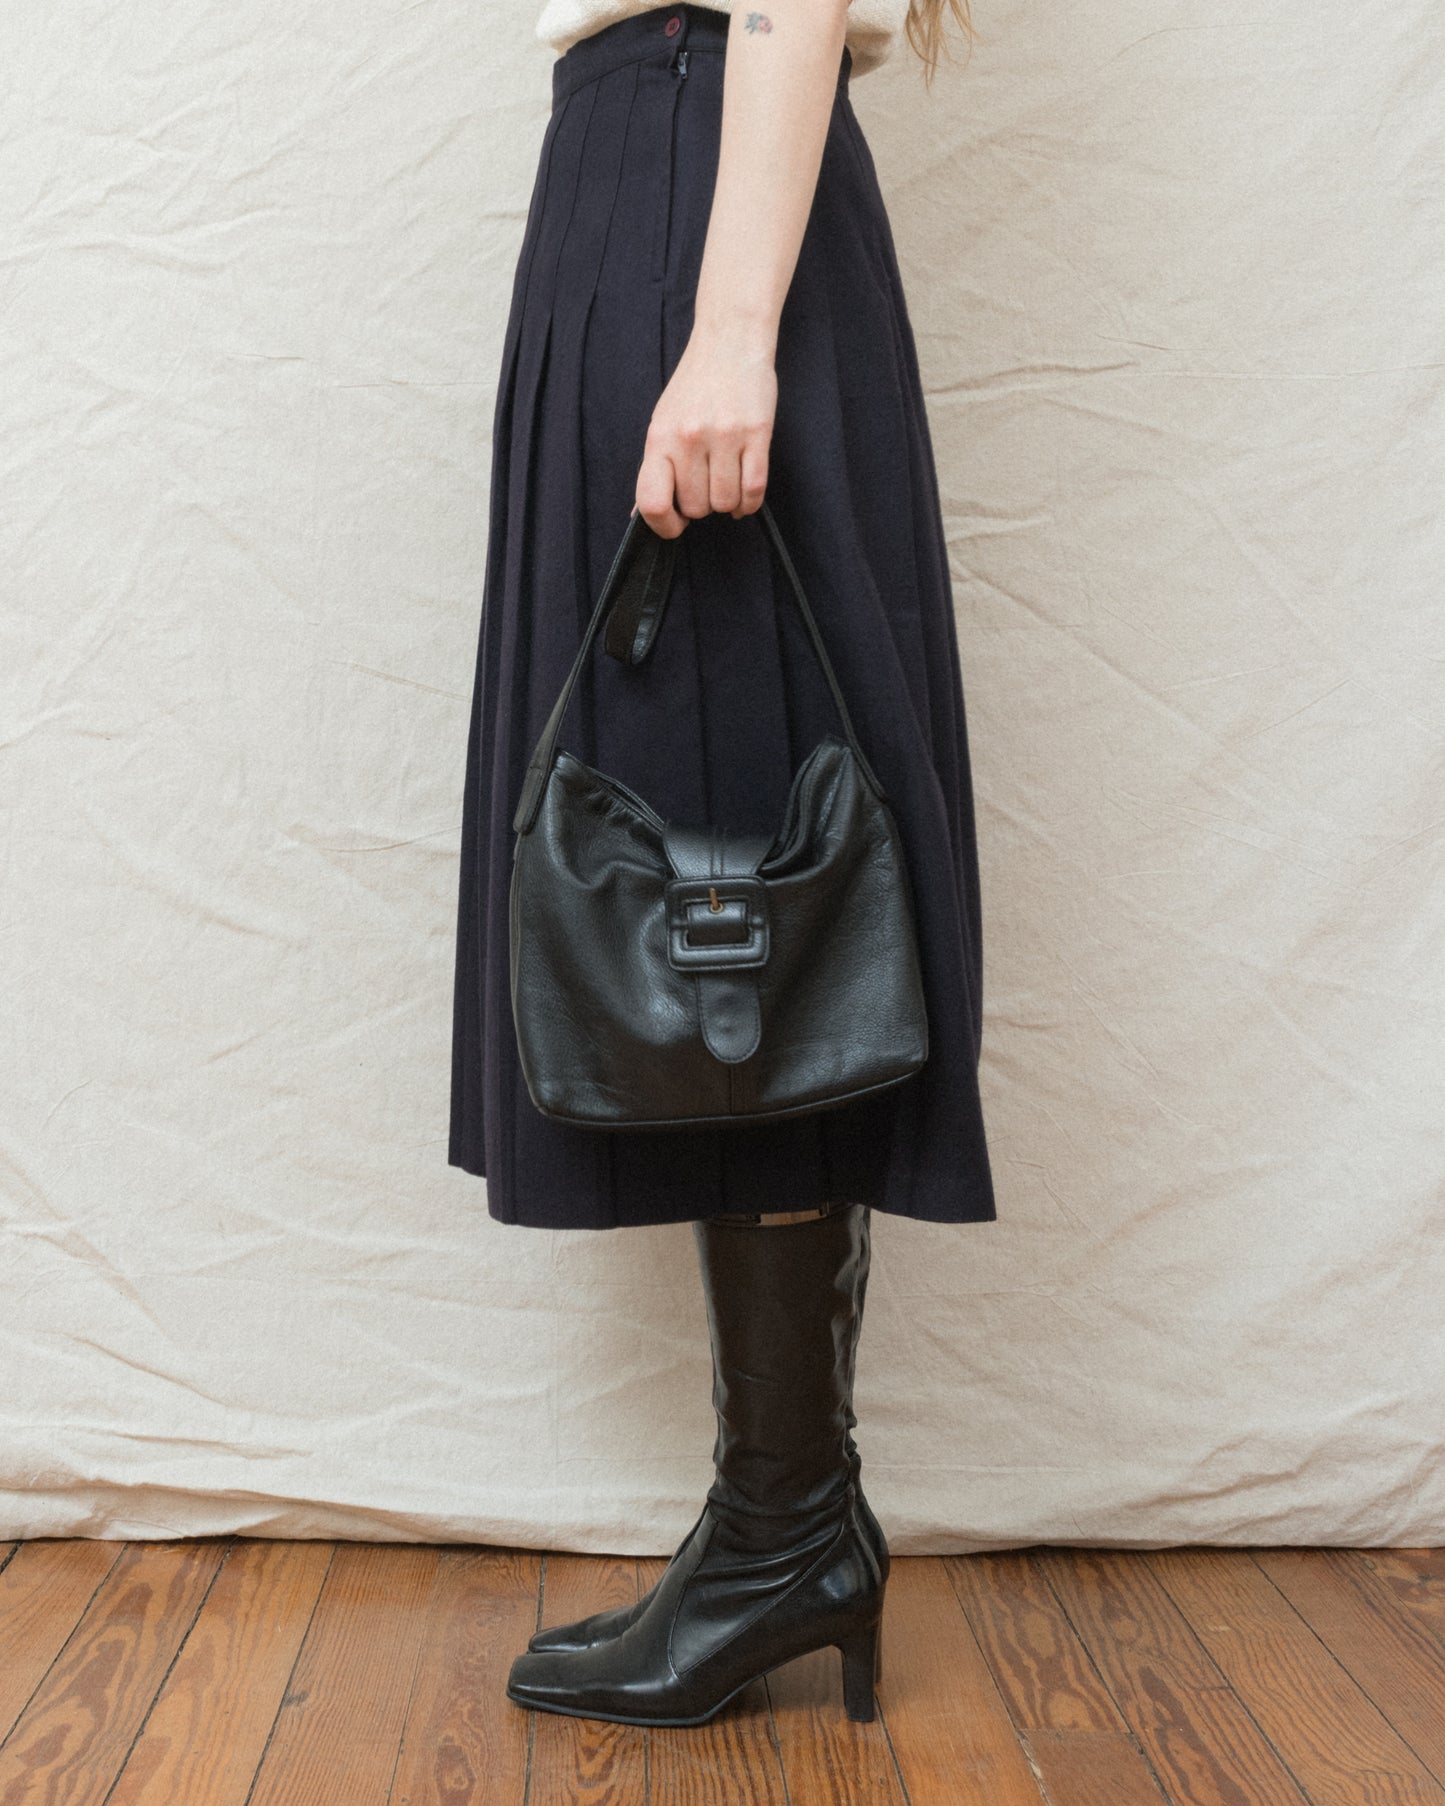 Vintage Black Leather Hobo Bag